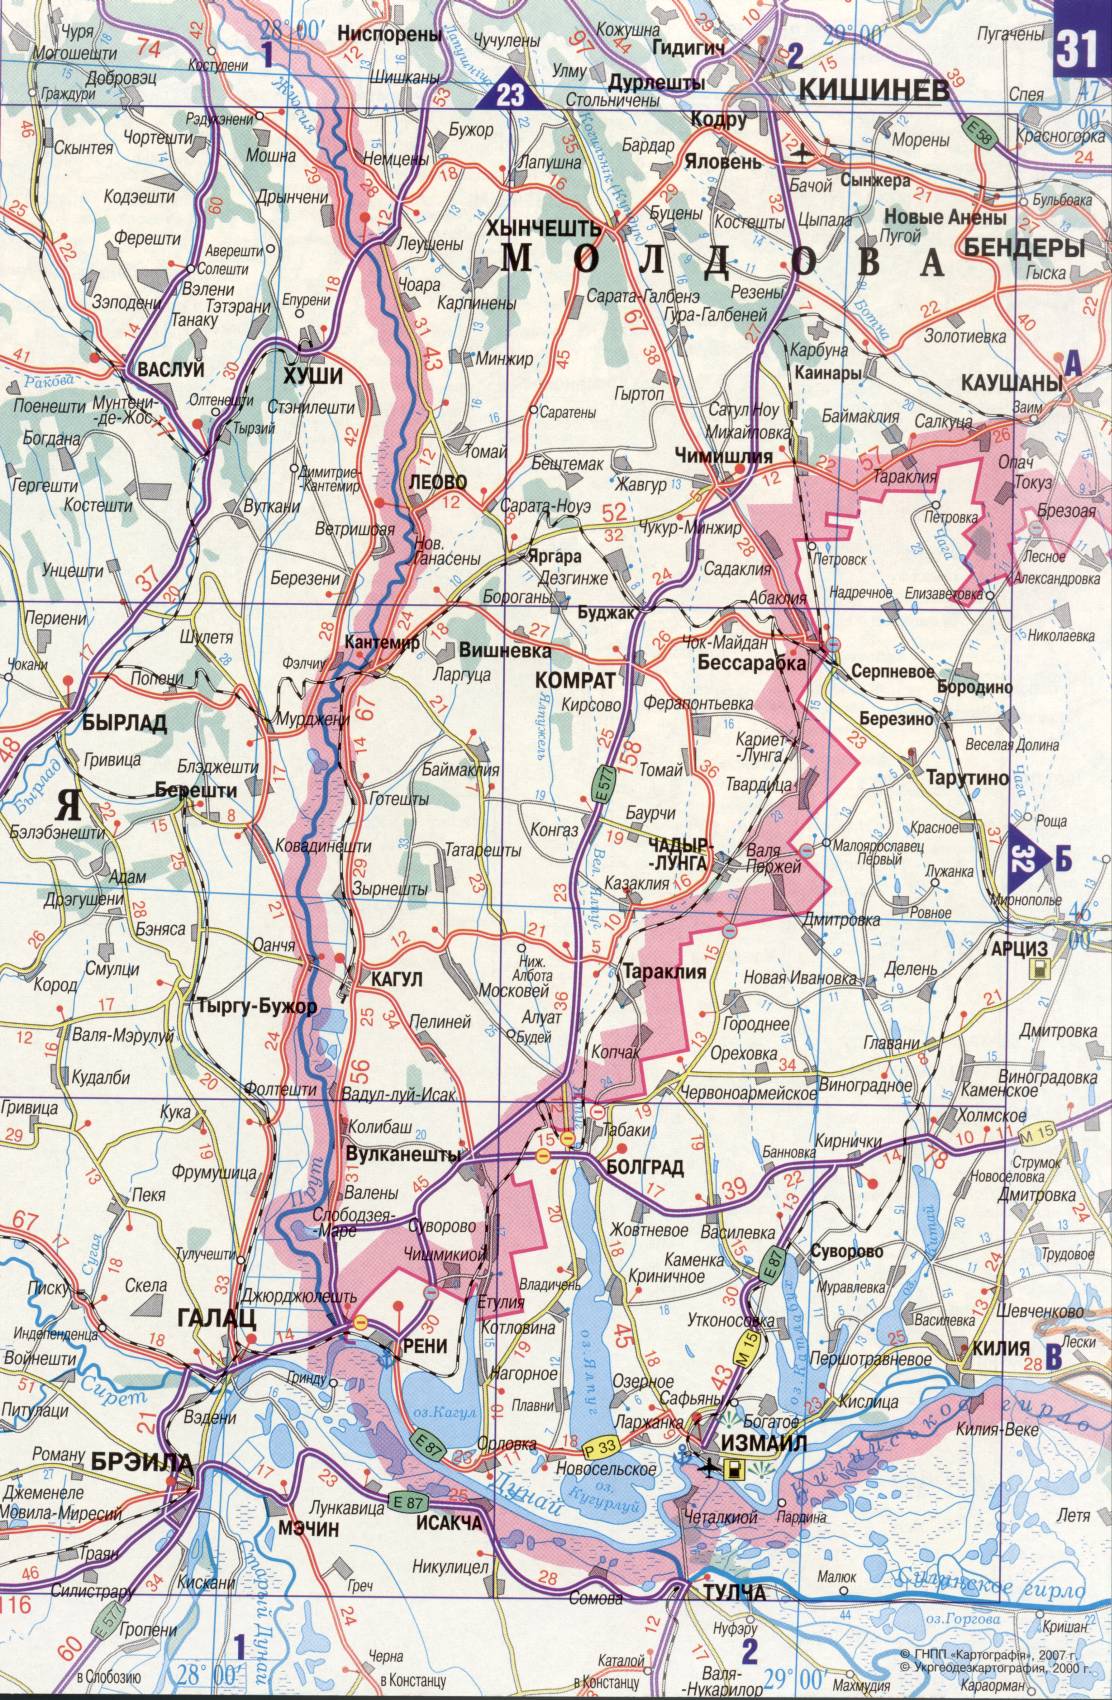 Карта Украины. Подробная карта дорог Украина из автомобильног атласа. скачать бесплатно, D3